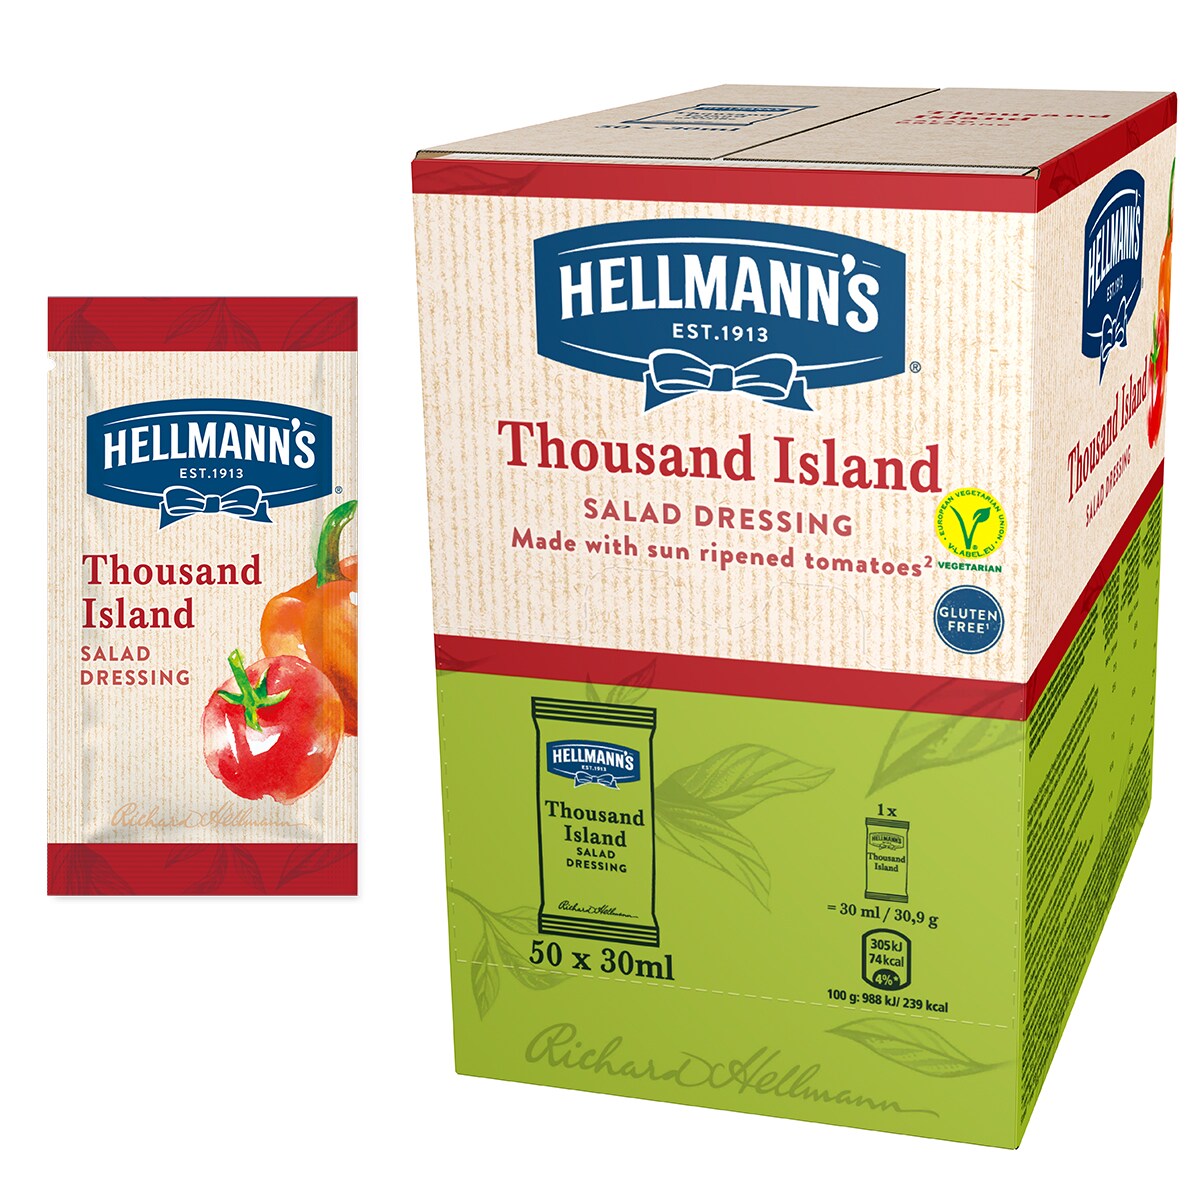 Hellmann's 1000 Island salatni preljev s rajčicama sazrelim na suncu - Hellmann’s salatni preljevi, idealni za poboljšanje okusa vaših salata u prigodnom porcijskom pakiranju.